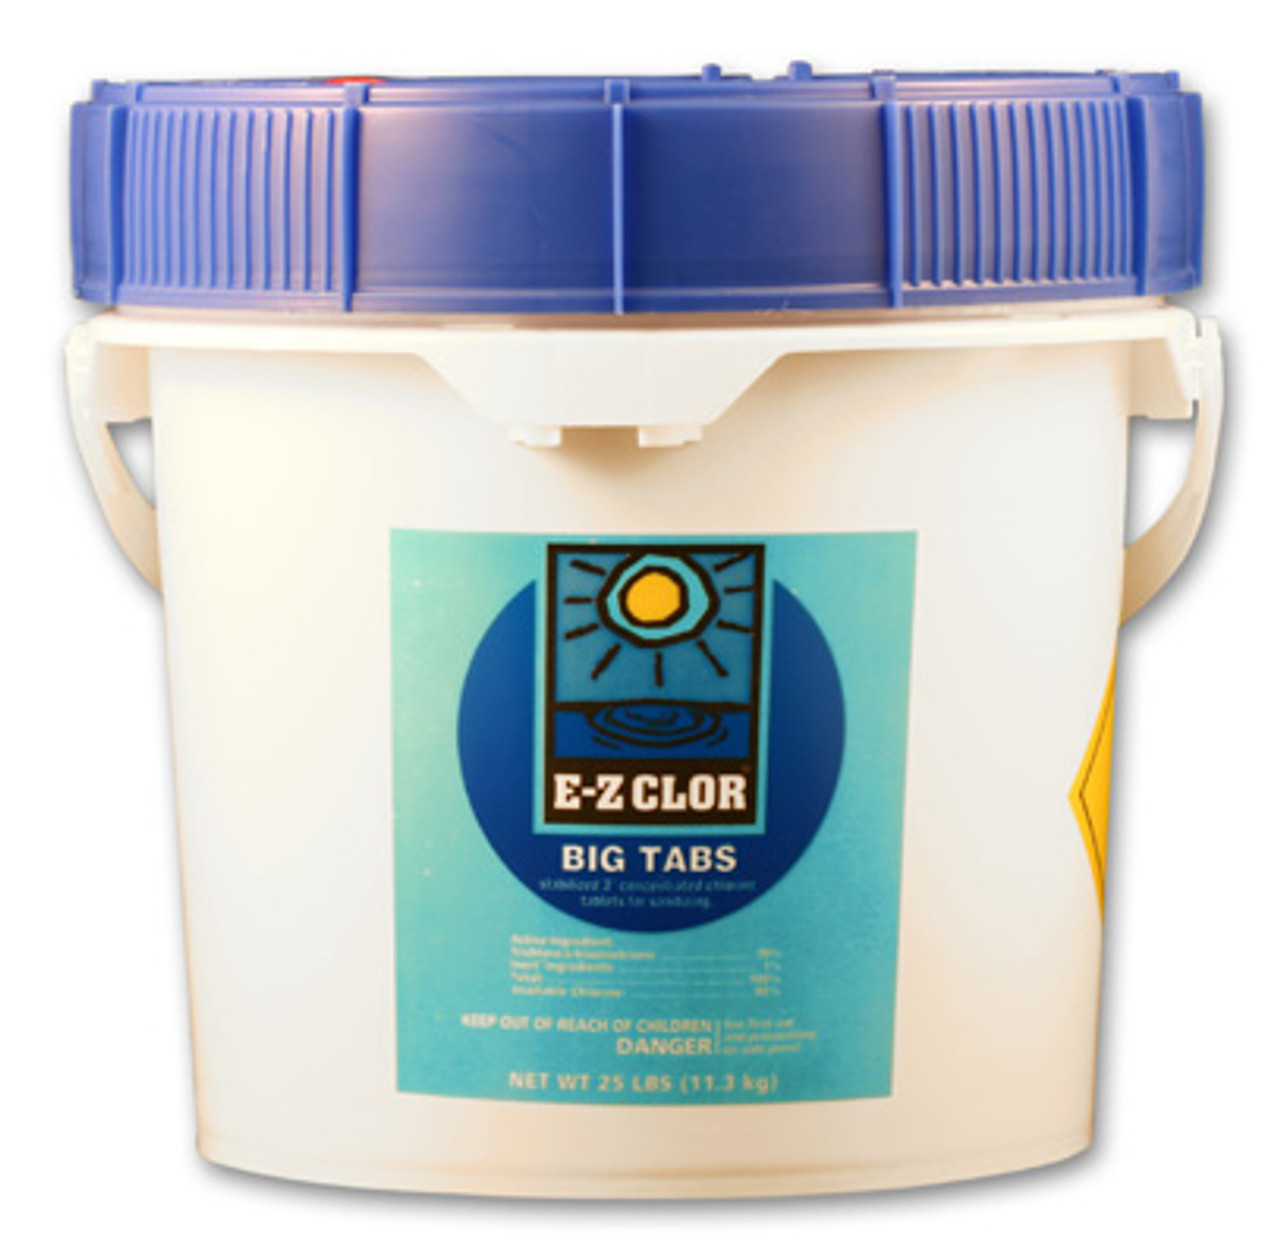 E-Z Clor 3 Chlorine Tablets - 25 pound Bucket